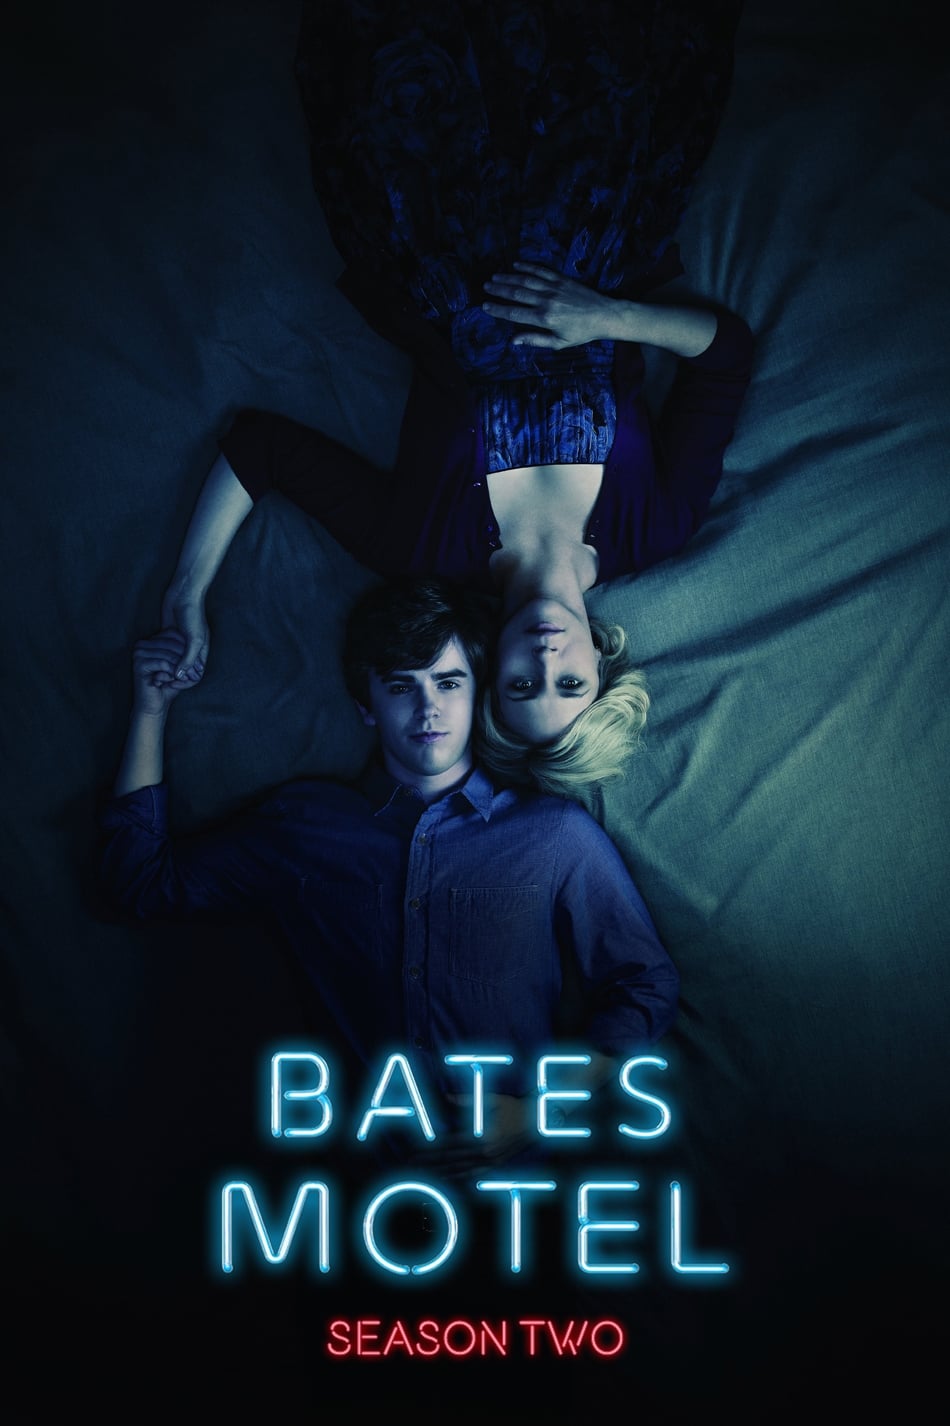 ดูหนังออนไลน์ฟรี Bates Motel (2014) Season 2 ซับไทย EP 6 เบส โมเทล ปี2 ตอนที่6 (ซับไทย)